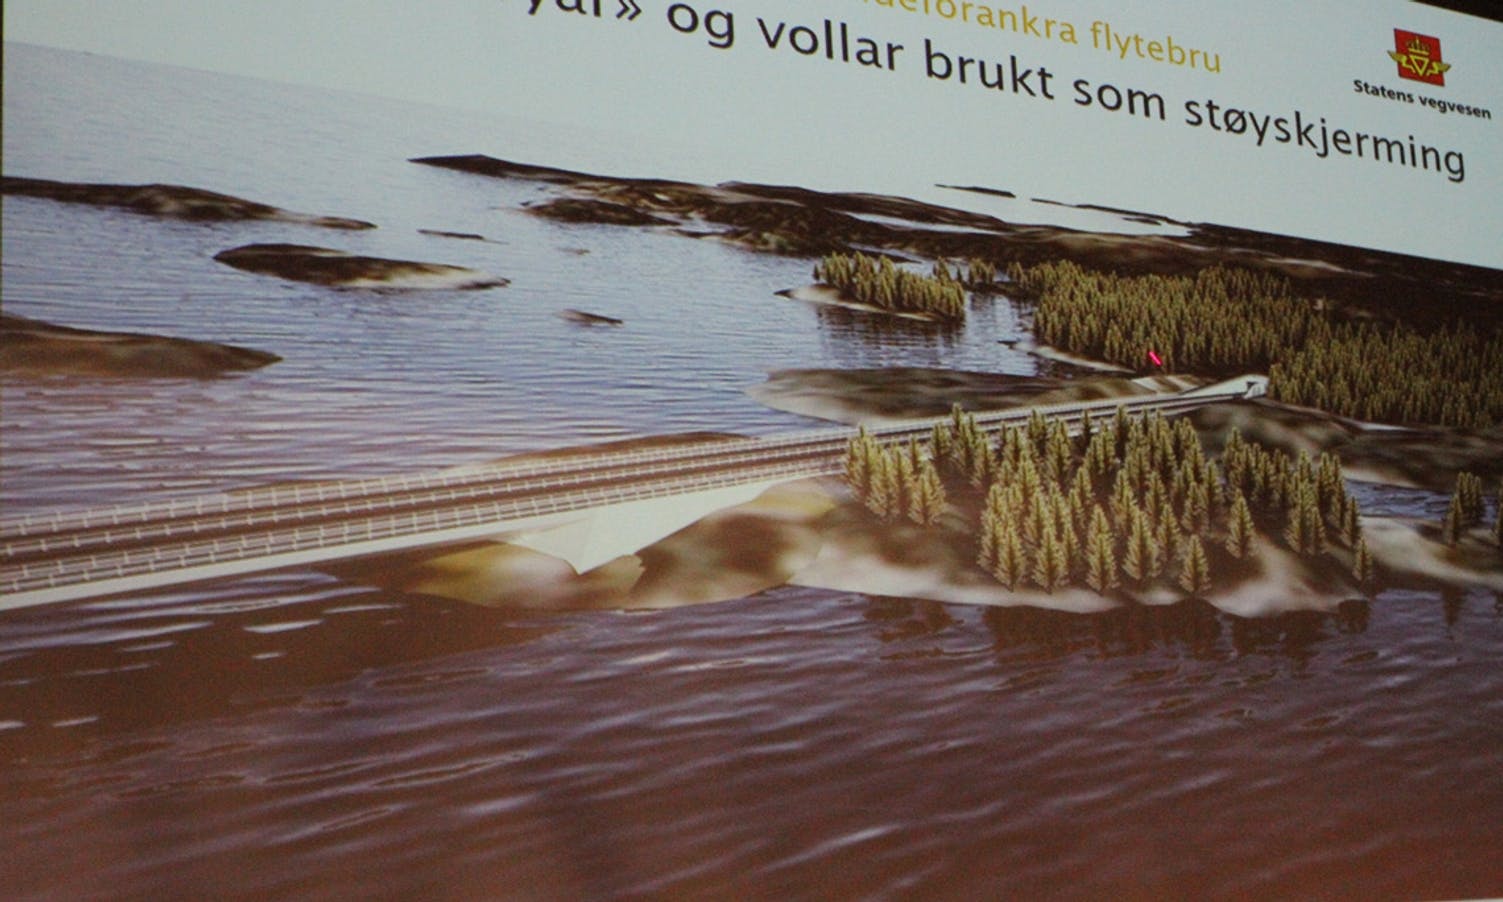 Modell for brufestet på Gulholmen med nye øyar og vollar som støyskjerming